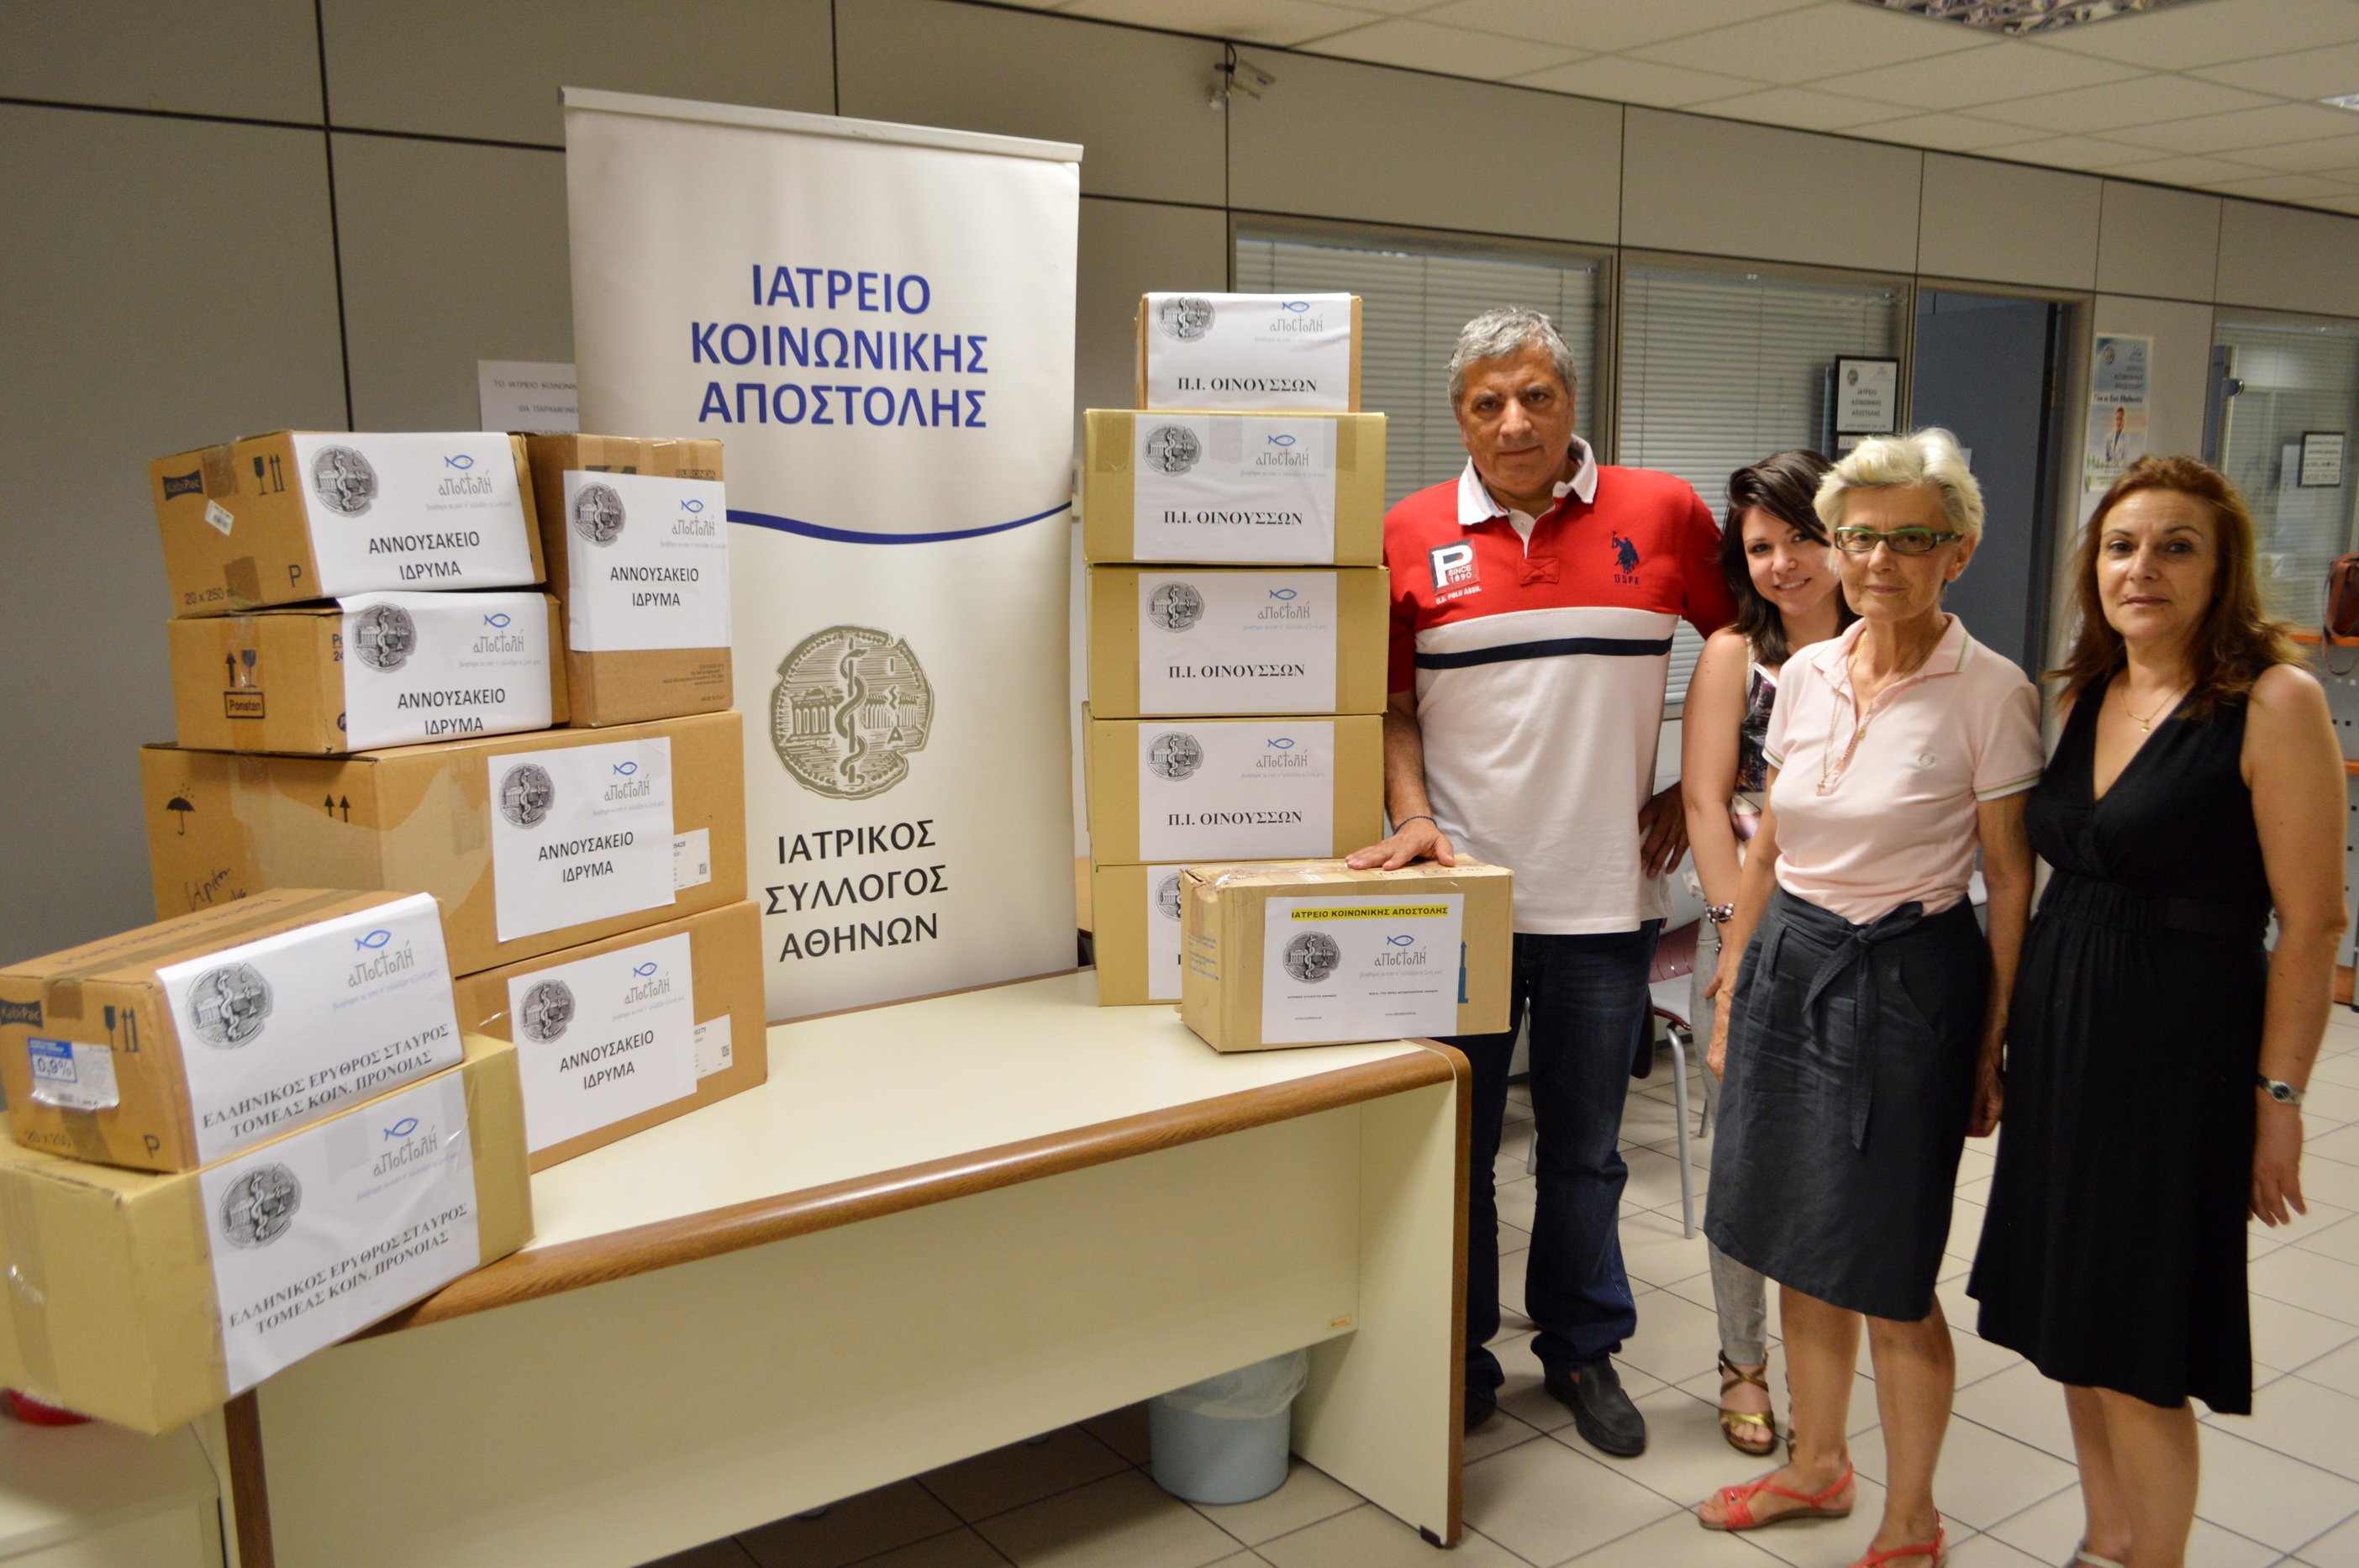 Αποστολή φαρμάκων από το Ιατρείο Κοινωνικής Αποστολής στις Οινούσσες Χίου, στον Ελληνικό Ερυθρό Σταυρό και στο Αννουσάκειο Ίδρυμα Κισάμου